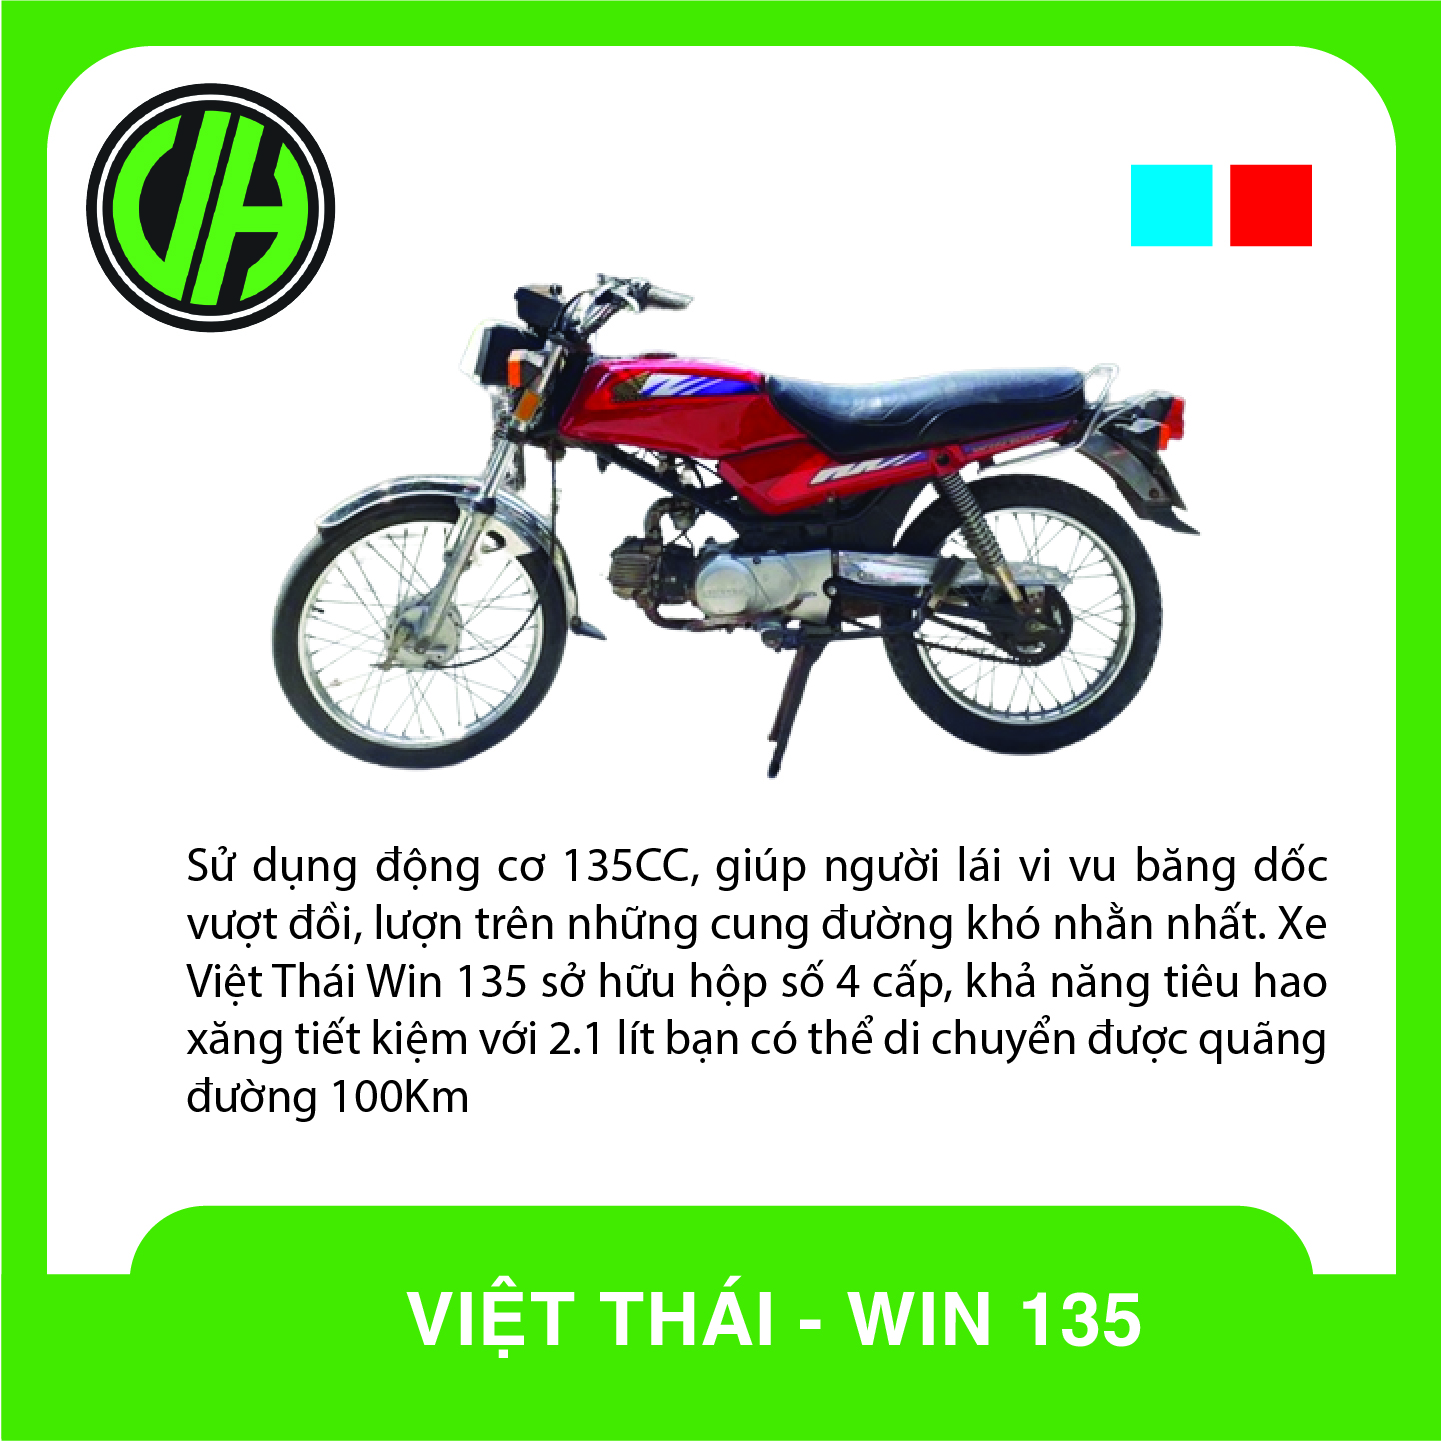 Việt Thái Việt Thái Win Việt Thái Win 140cc  RaoXYZ